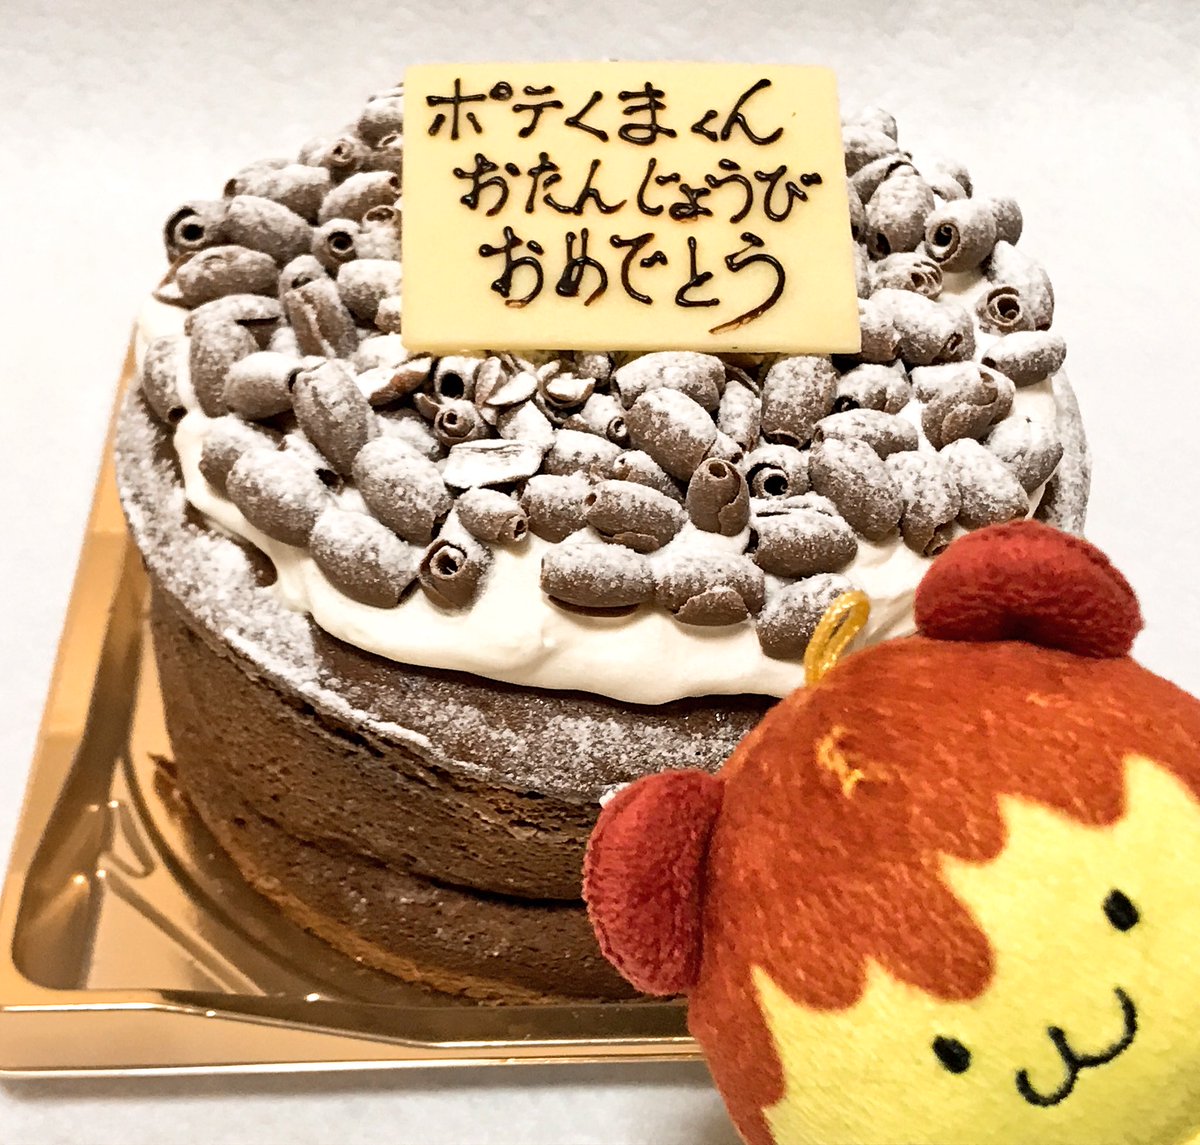 公式 ポテくまくん 埼玉県秩父市 Sur Twitter わーい おっちゃんがバースデーケーキ 買ってくりたー 0 ﾄﾞ ﾄﾞｳｼﾀ ｵｯﾁｬﾝ やばい とてもウマし おっちゃん あんがとね どんな人にも少しはいいところがあるようだ おっちゃんごちそうさま